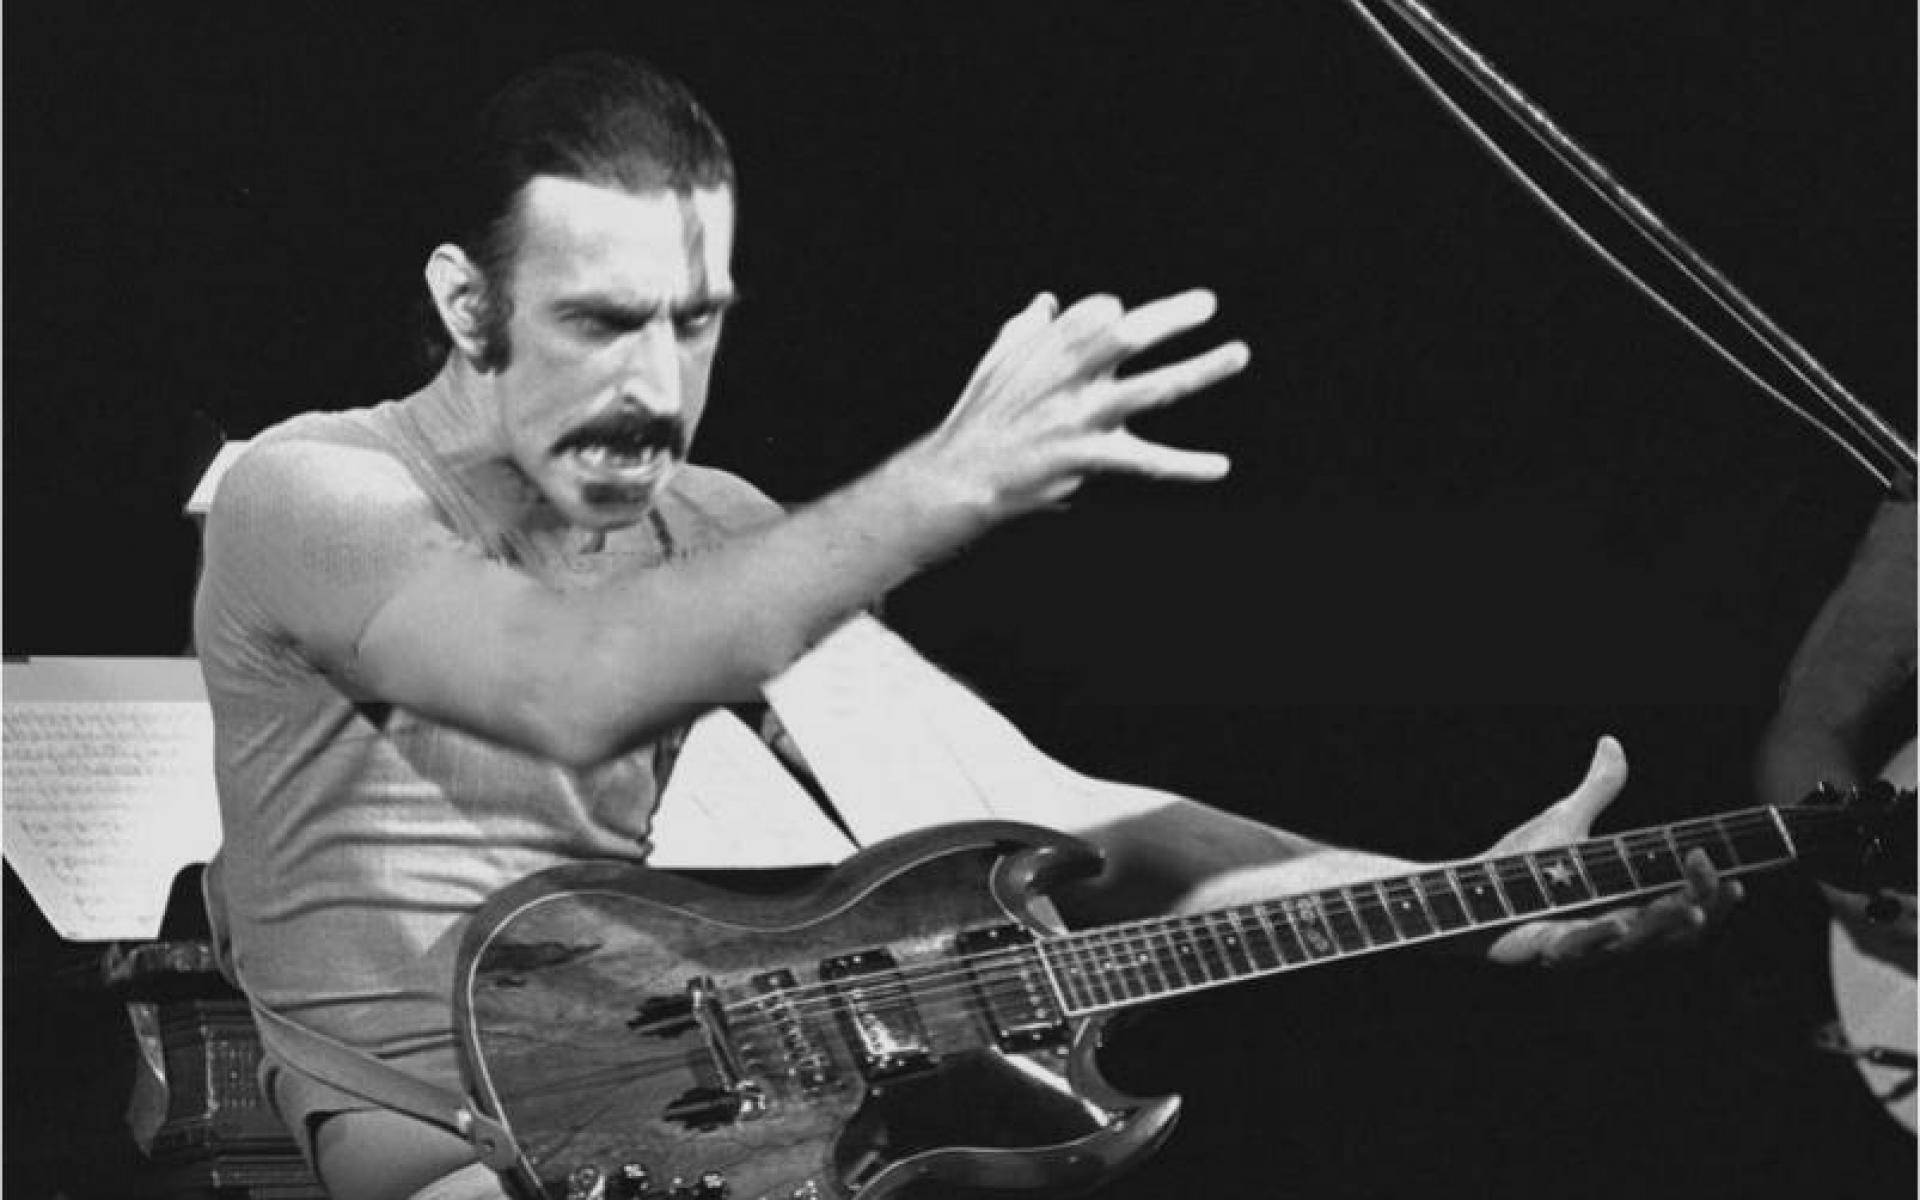 Passioneret Frank Zappa rockede en racebane. Wallpaper